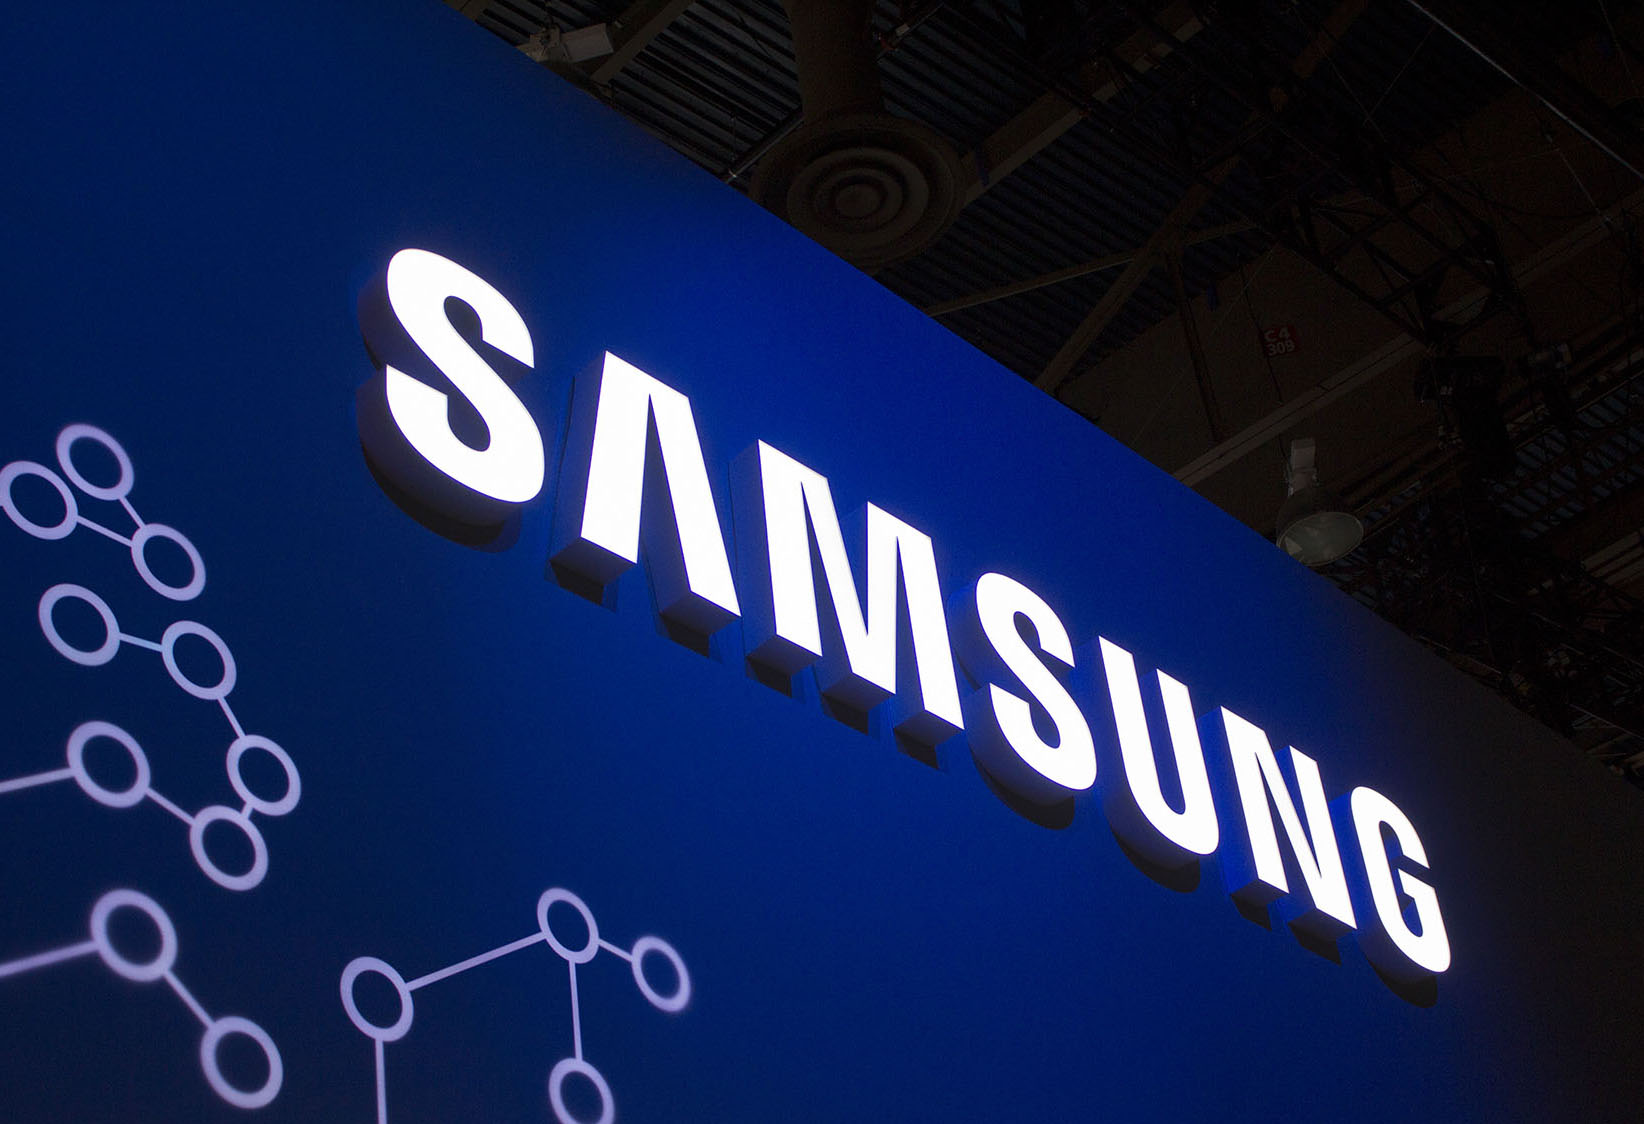 Tехнически директор на Samsung оценява децентрализацията повече от блокчейн